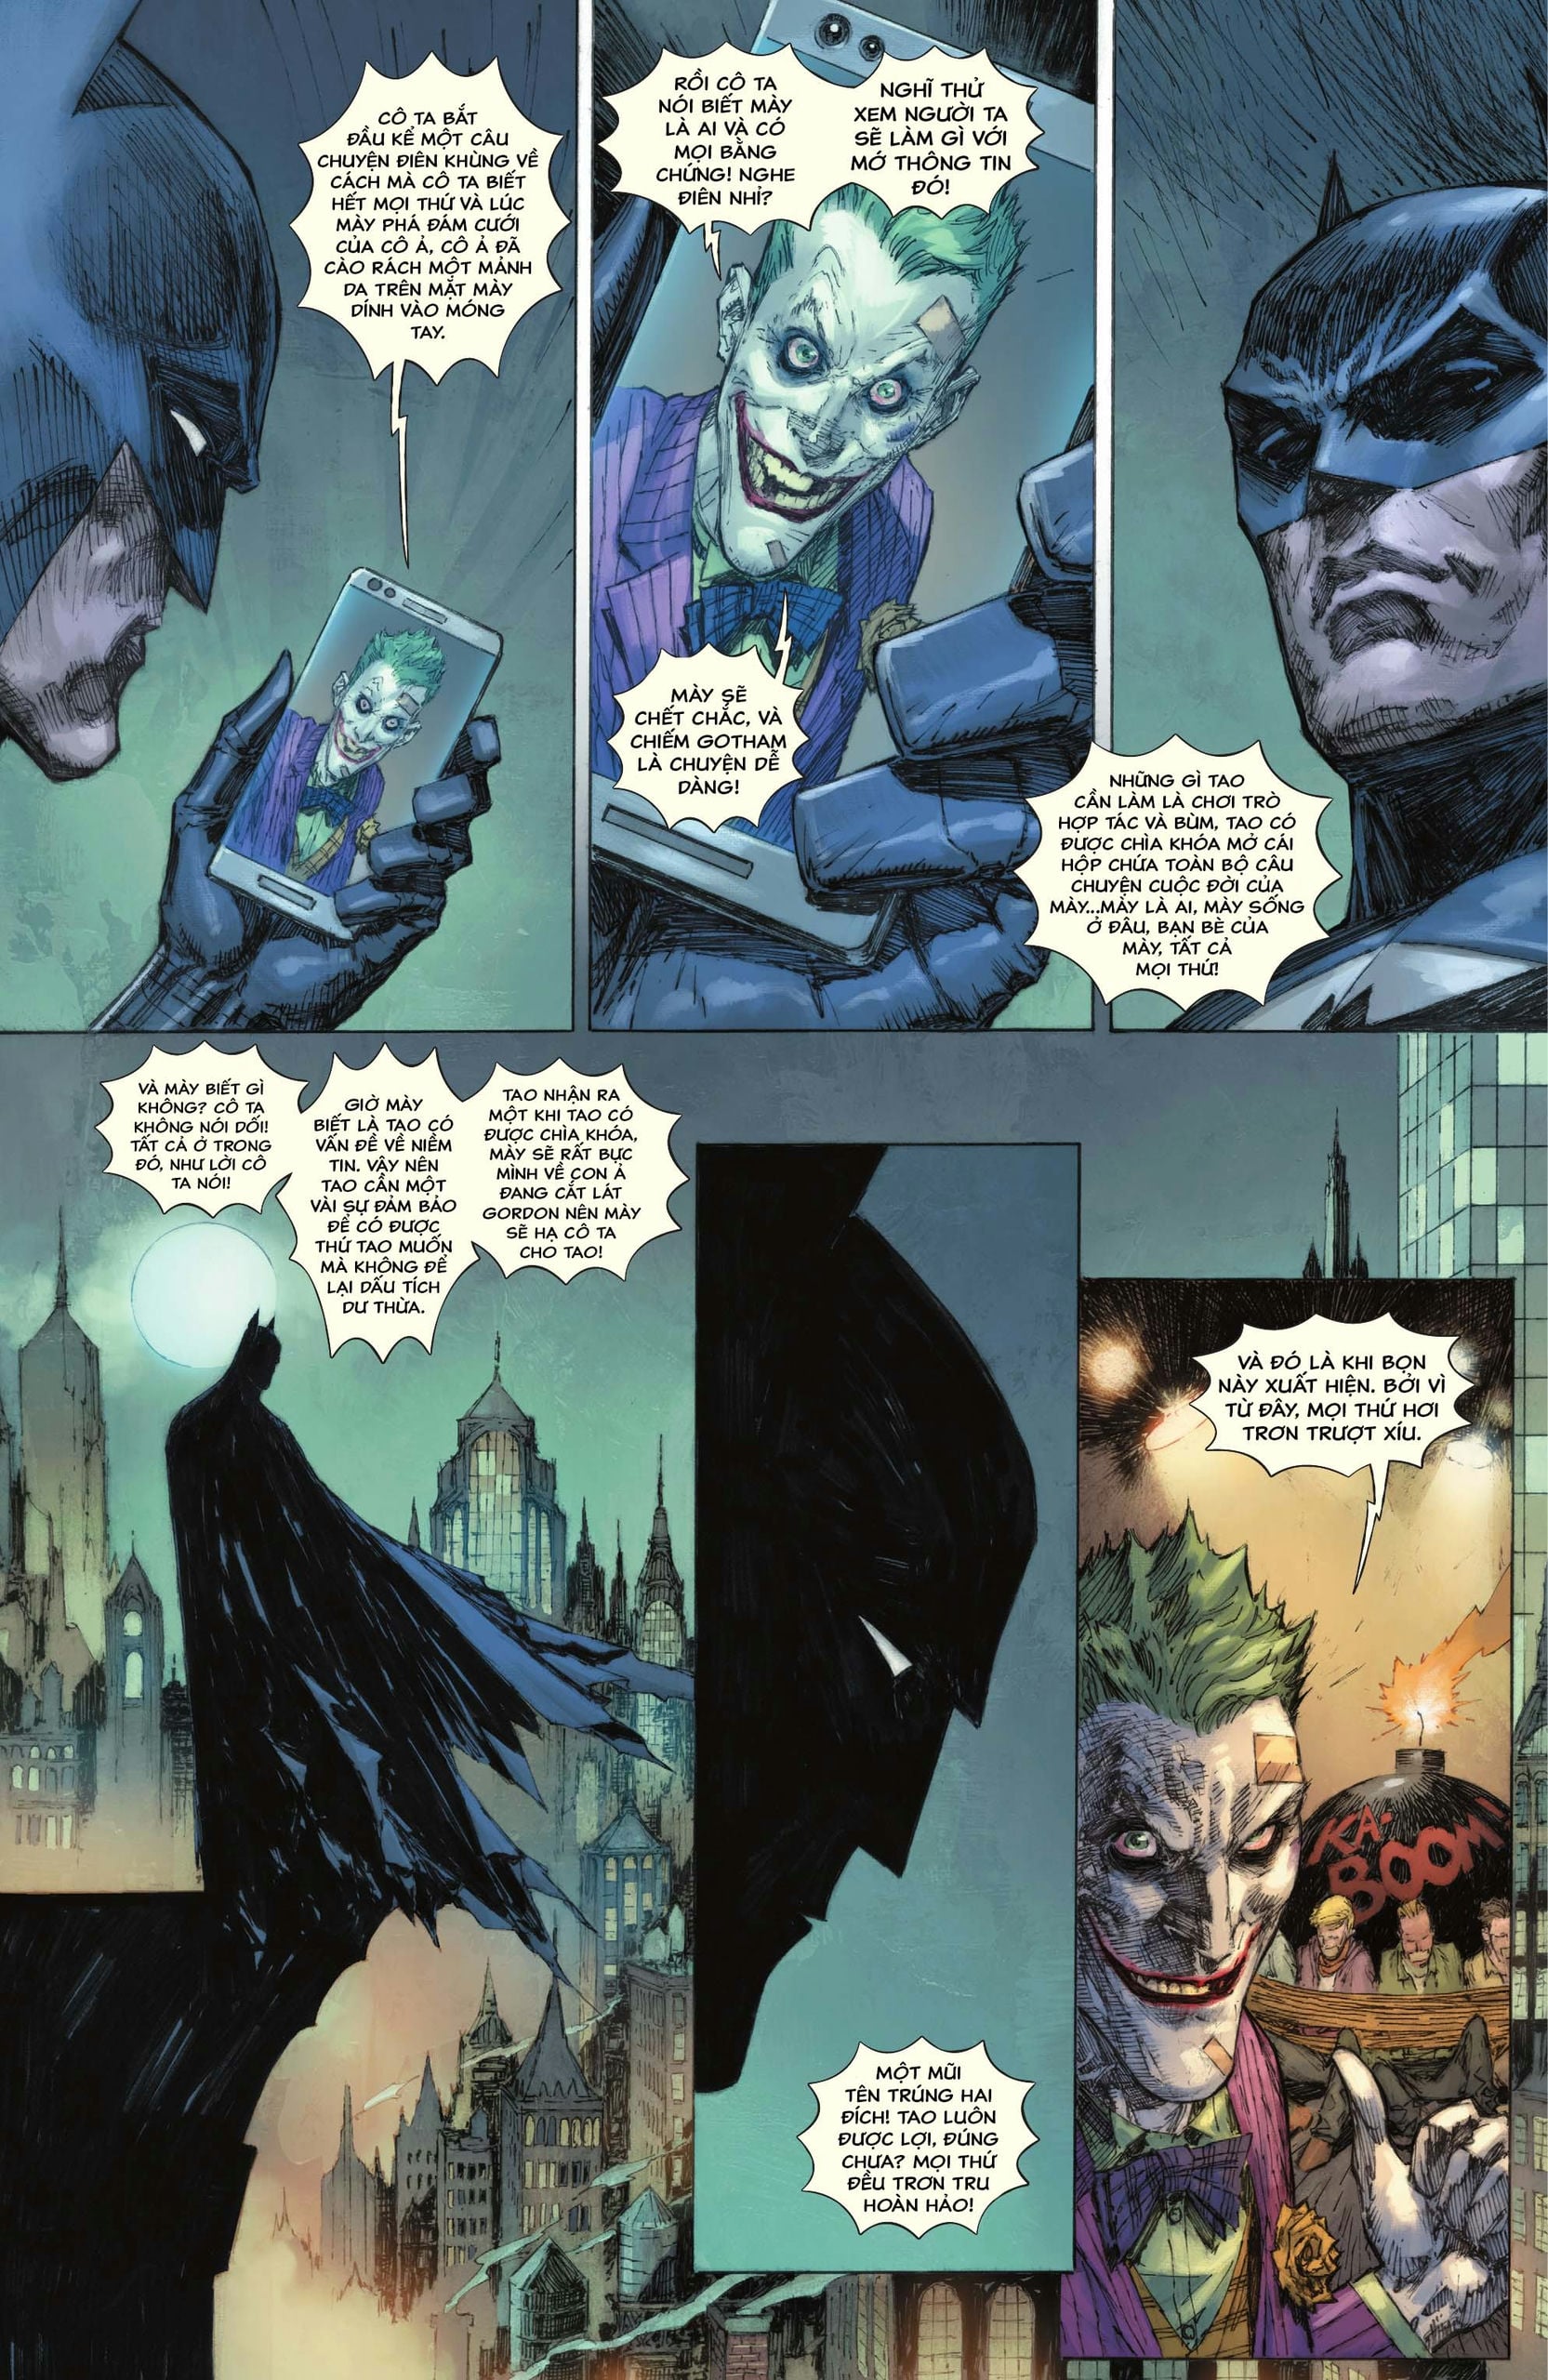 https://langgeek.net/wp-content/webpc-passthru.php?src=https://langgeek.net/wp-content/uploads/2023/05/Batman-_-The-Joker-The-Deadly-Duo-2022-007-023.jpg&nocache=1